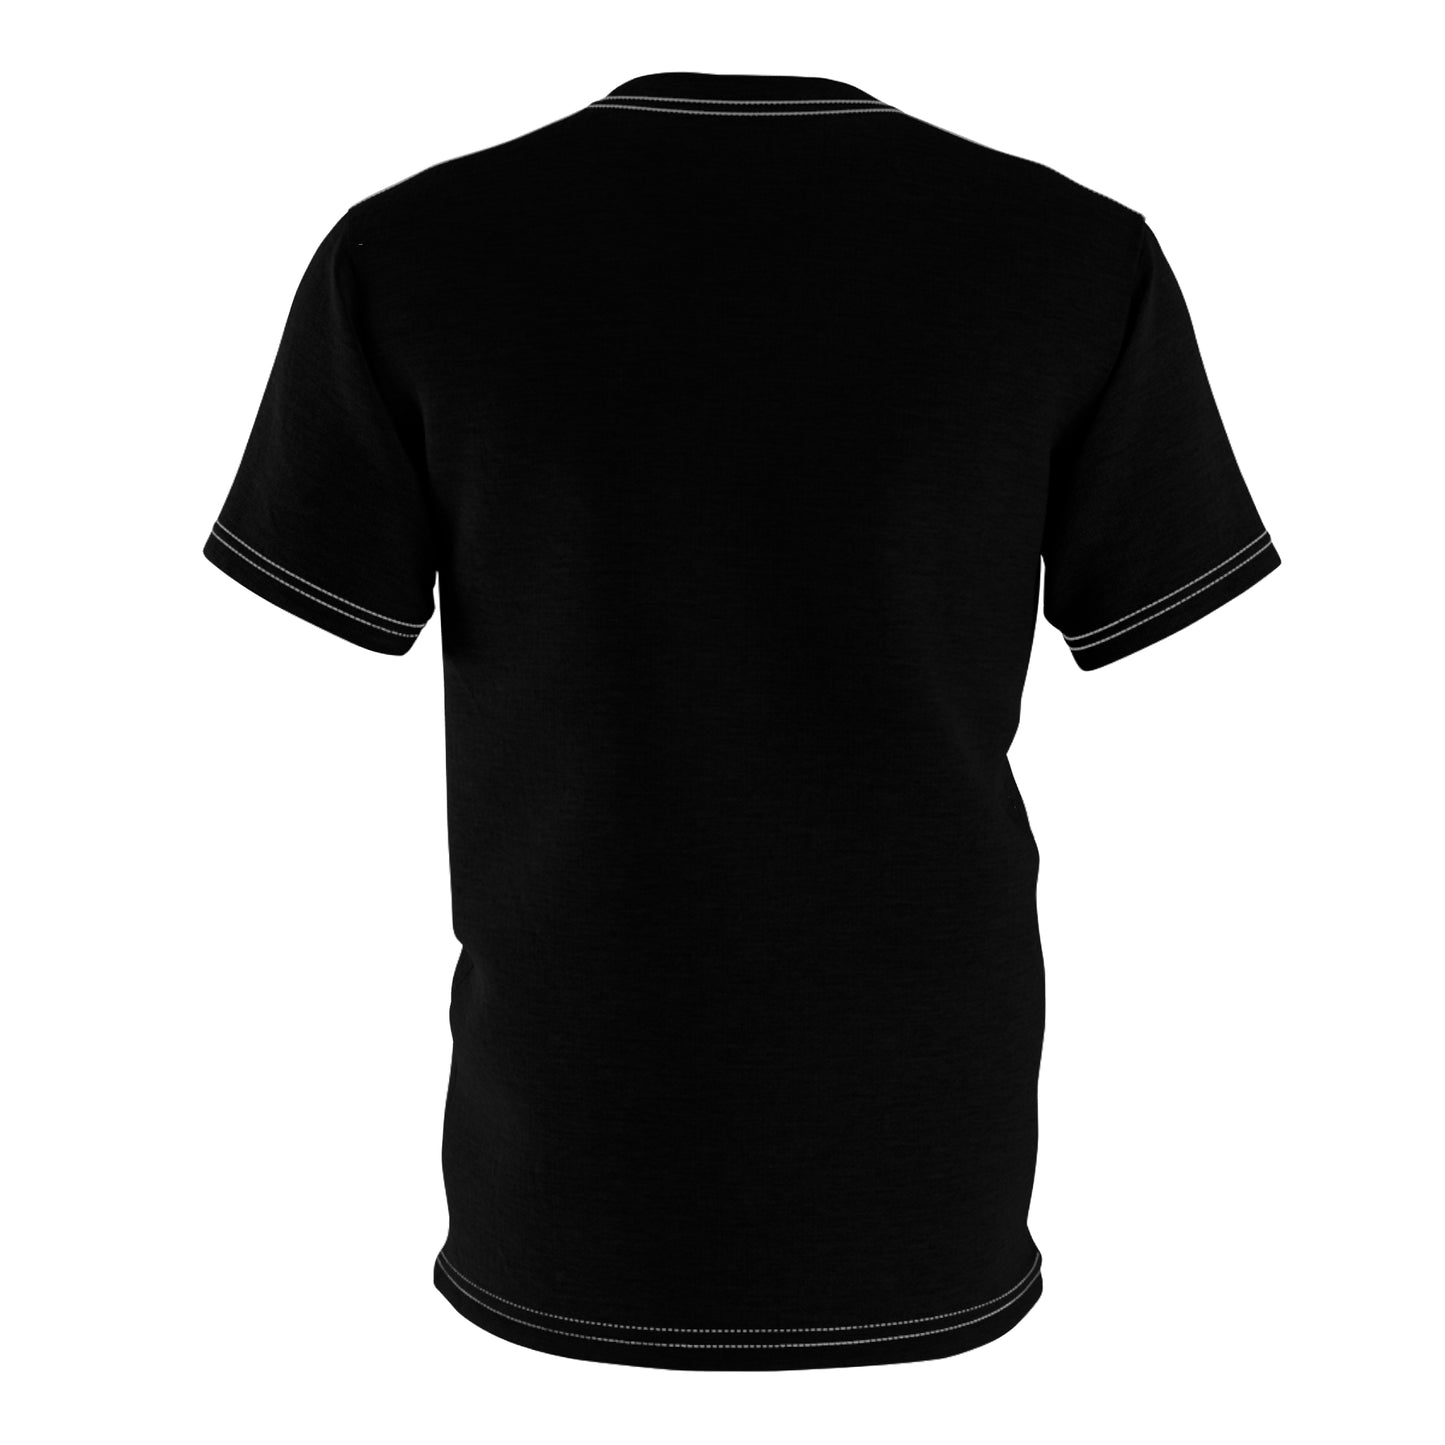 Unisex Black T-Shirt Front Culture Image_00